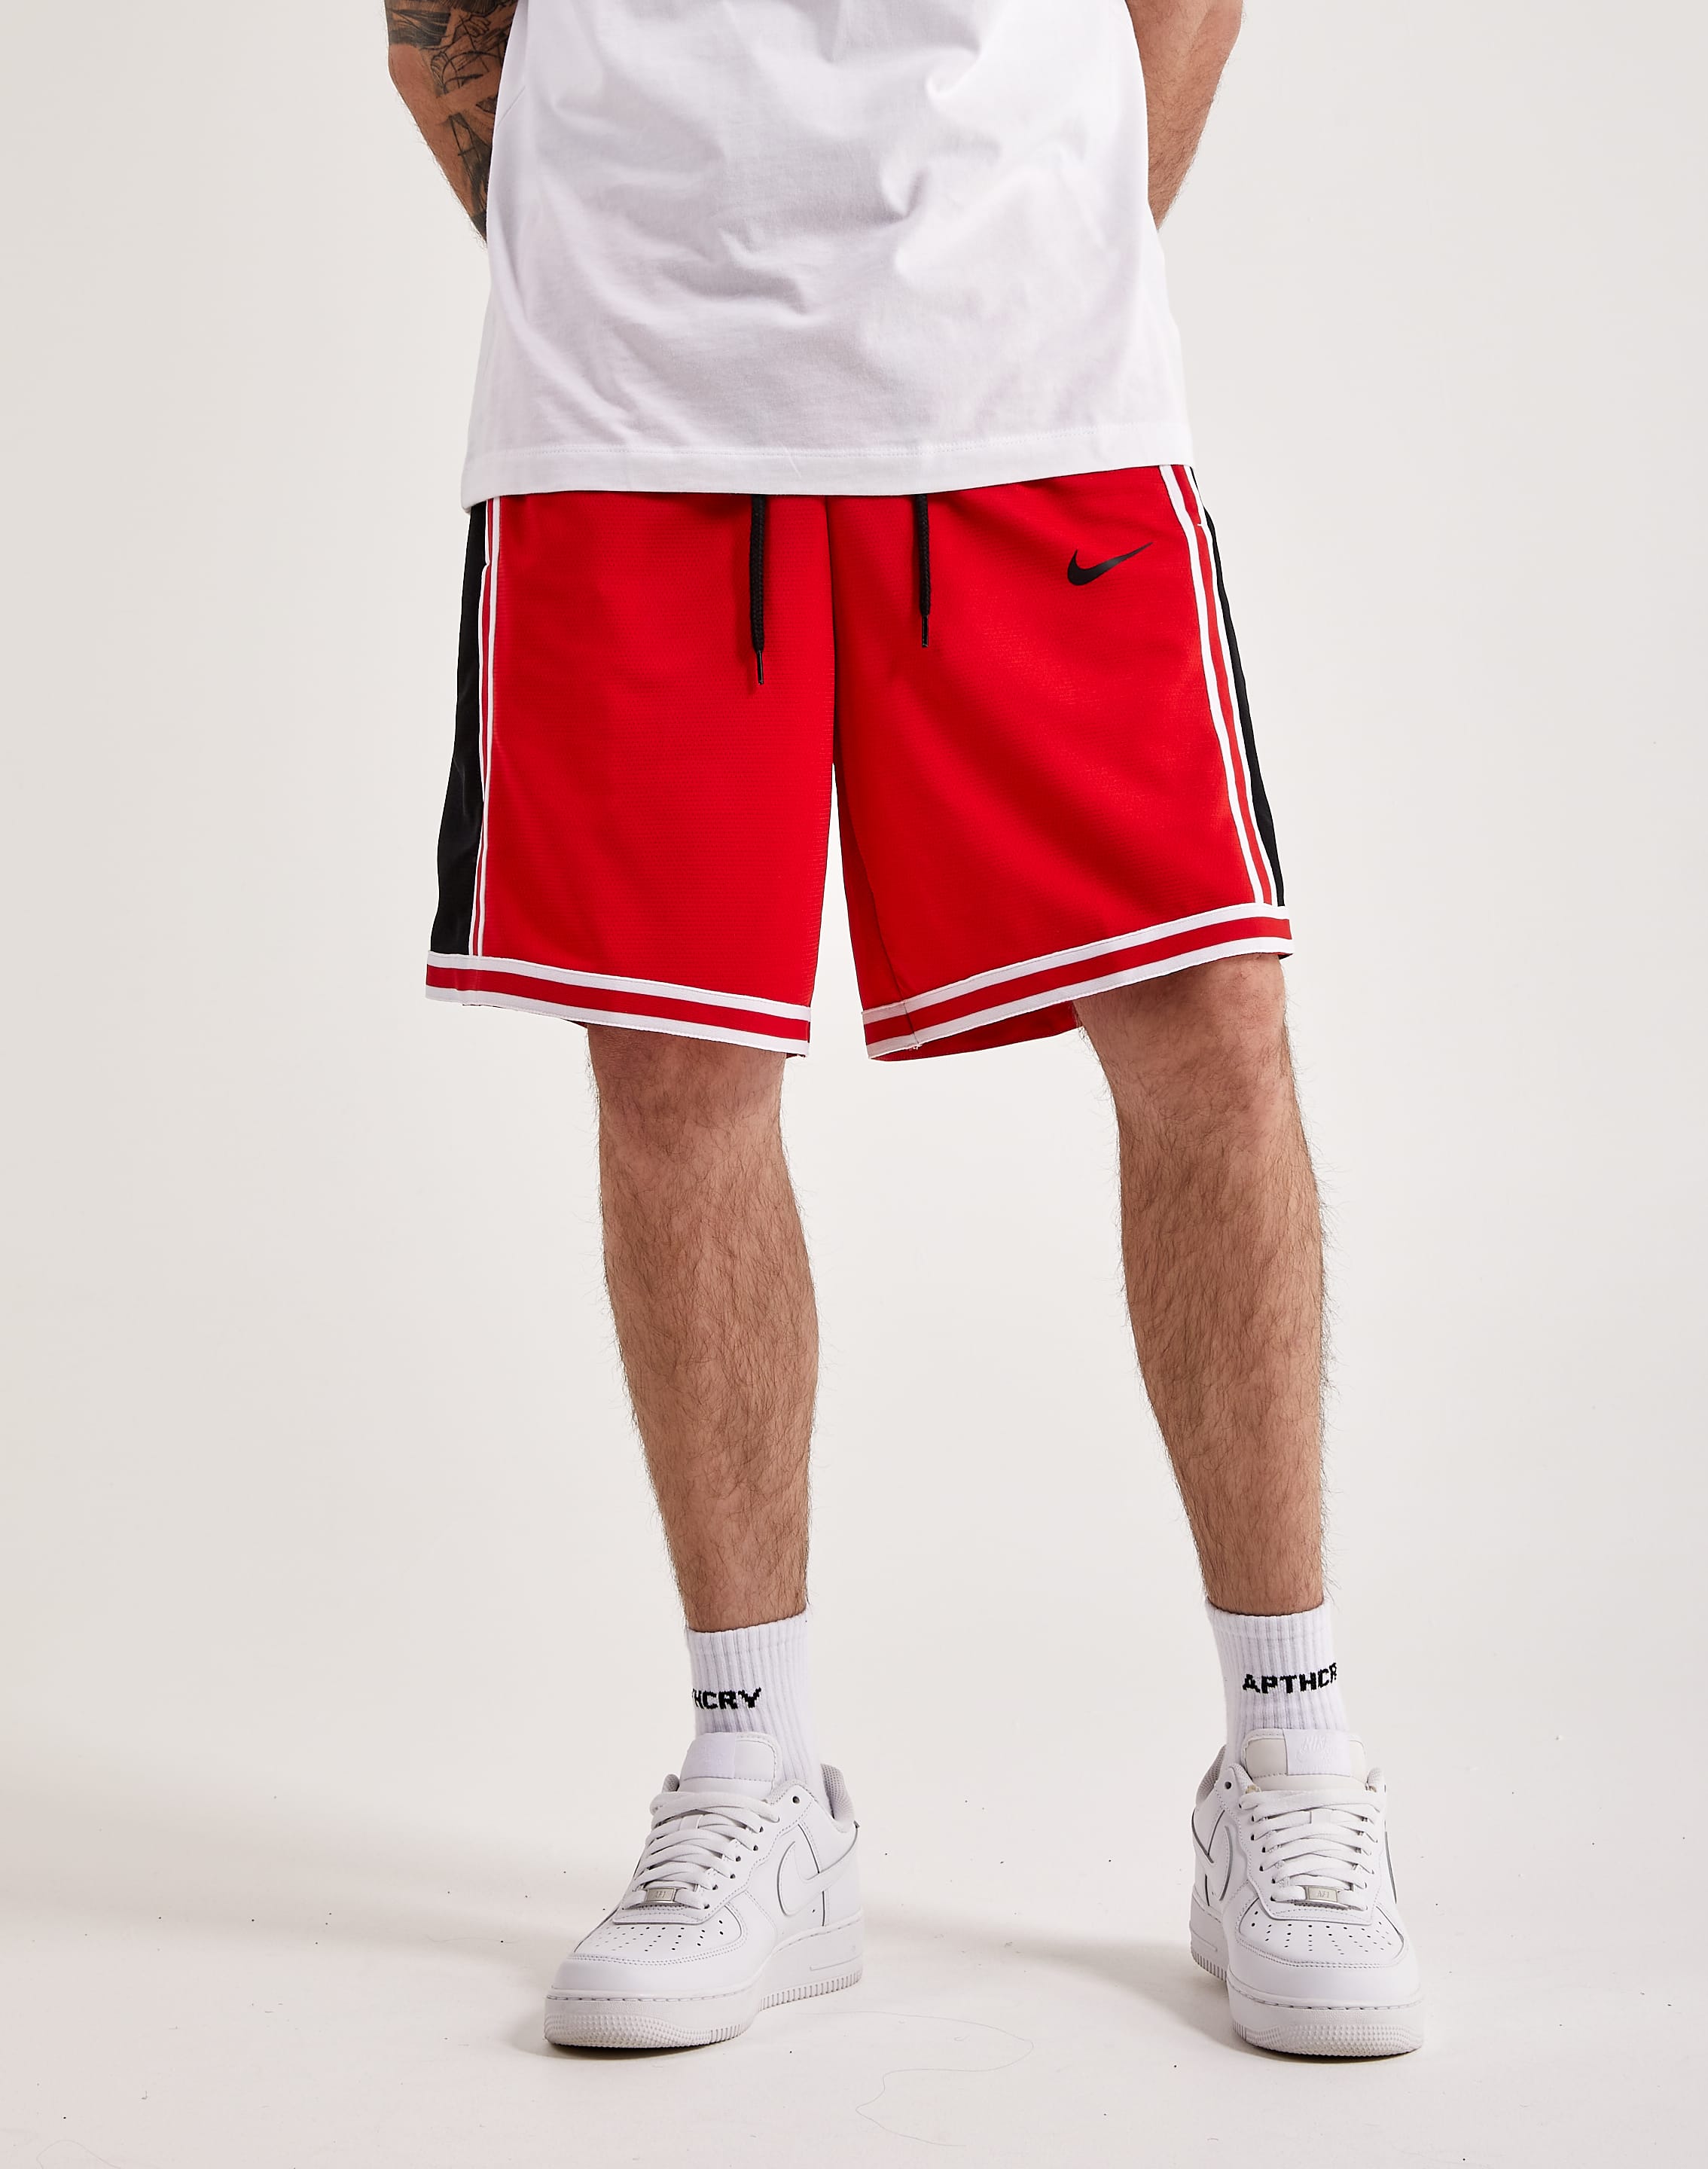 Nike DNA Dri-Fit Basketball Shorts White Black Gold CV1897-100 Men's  Size XL